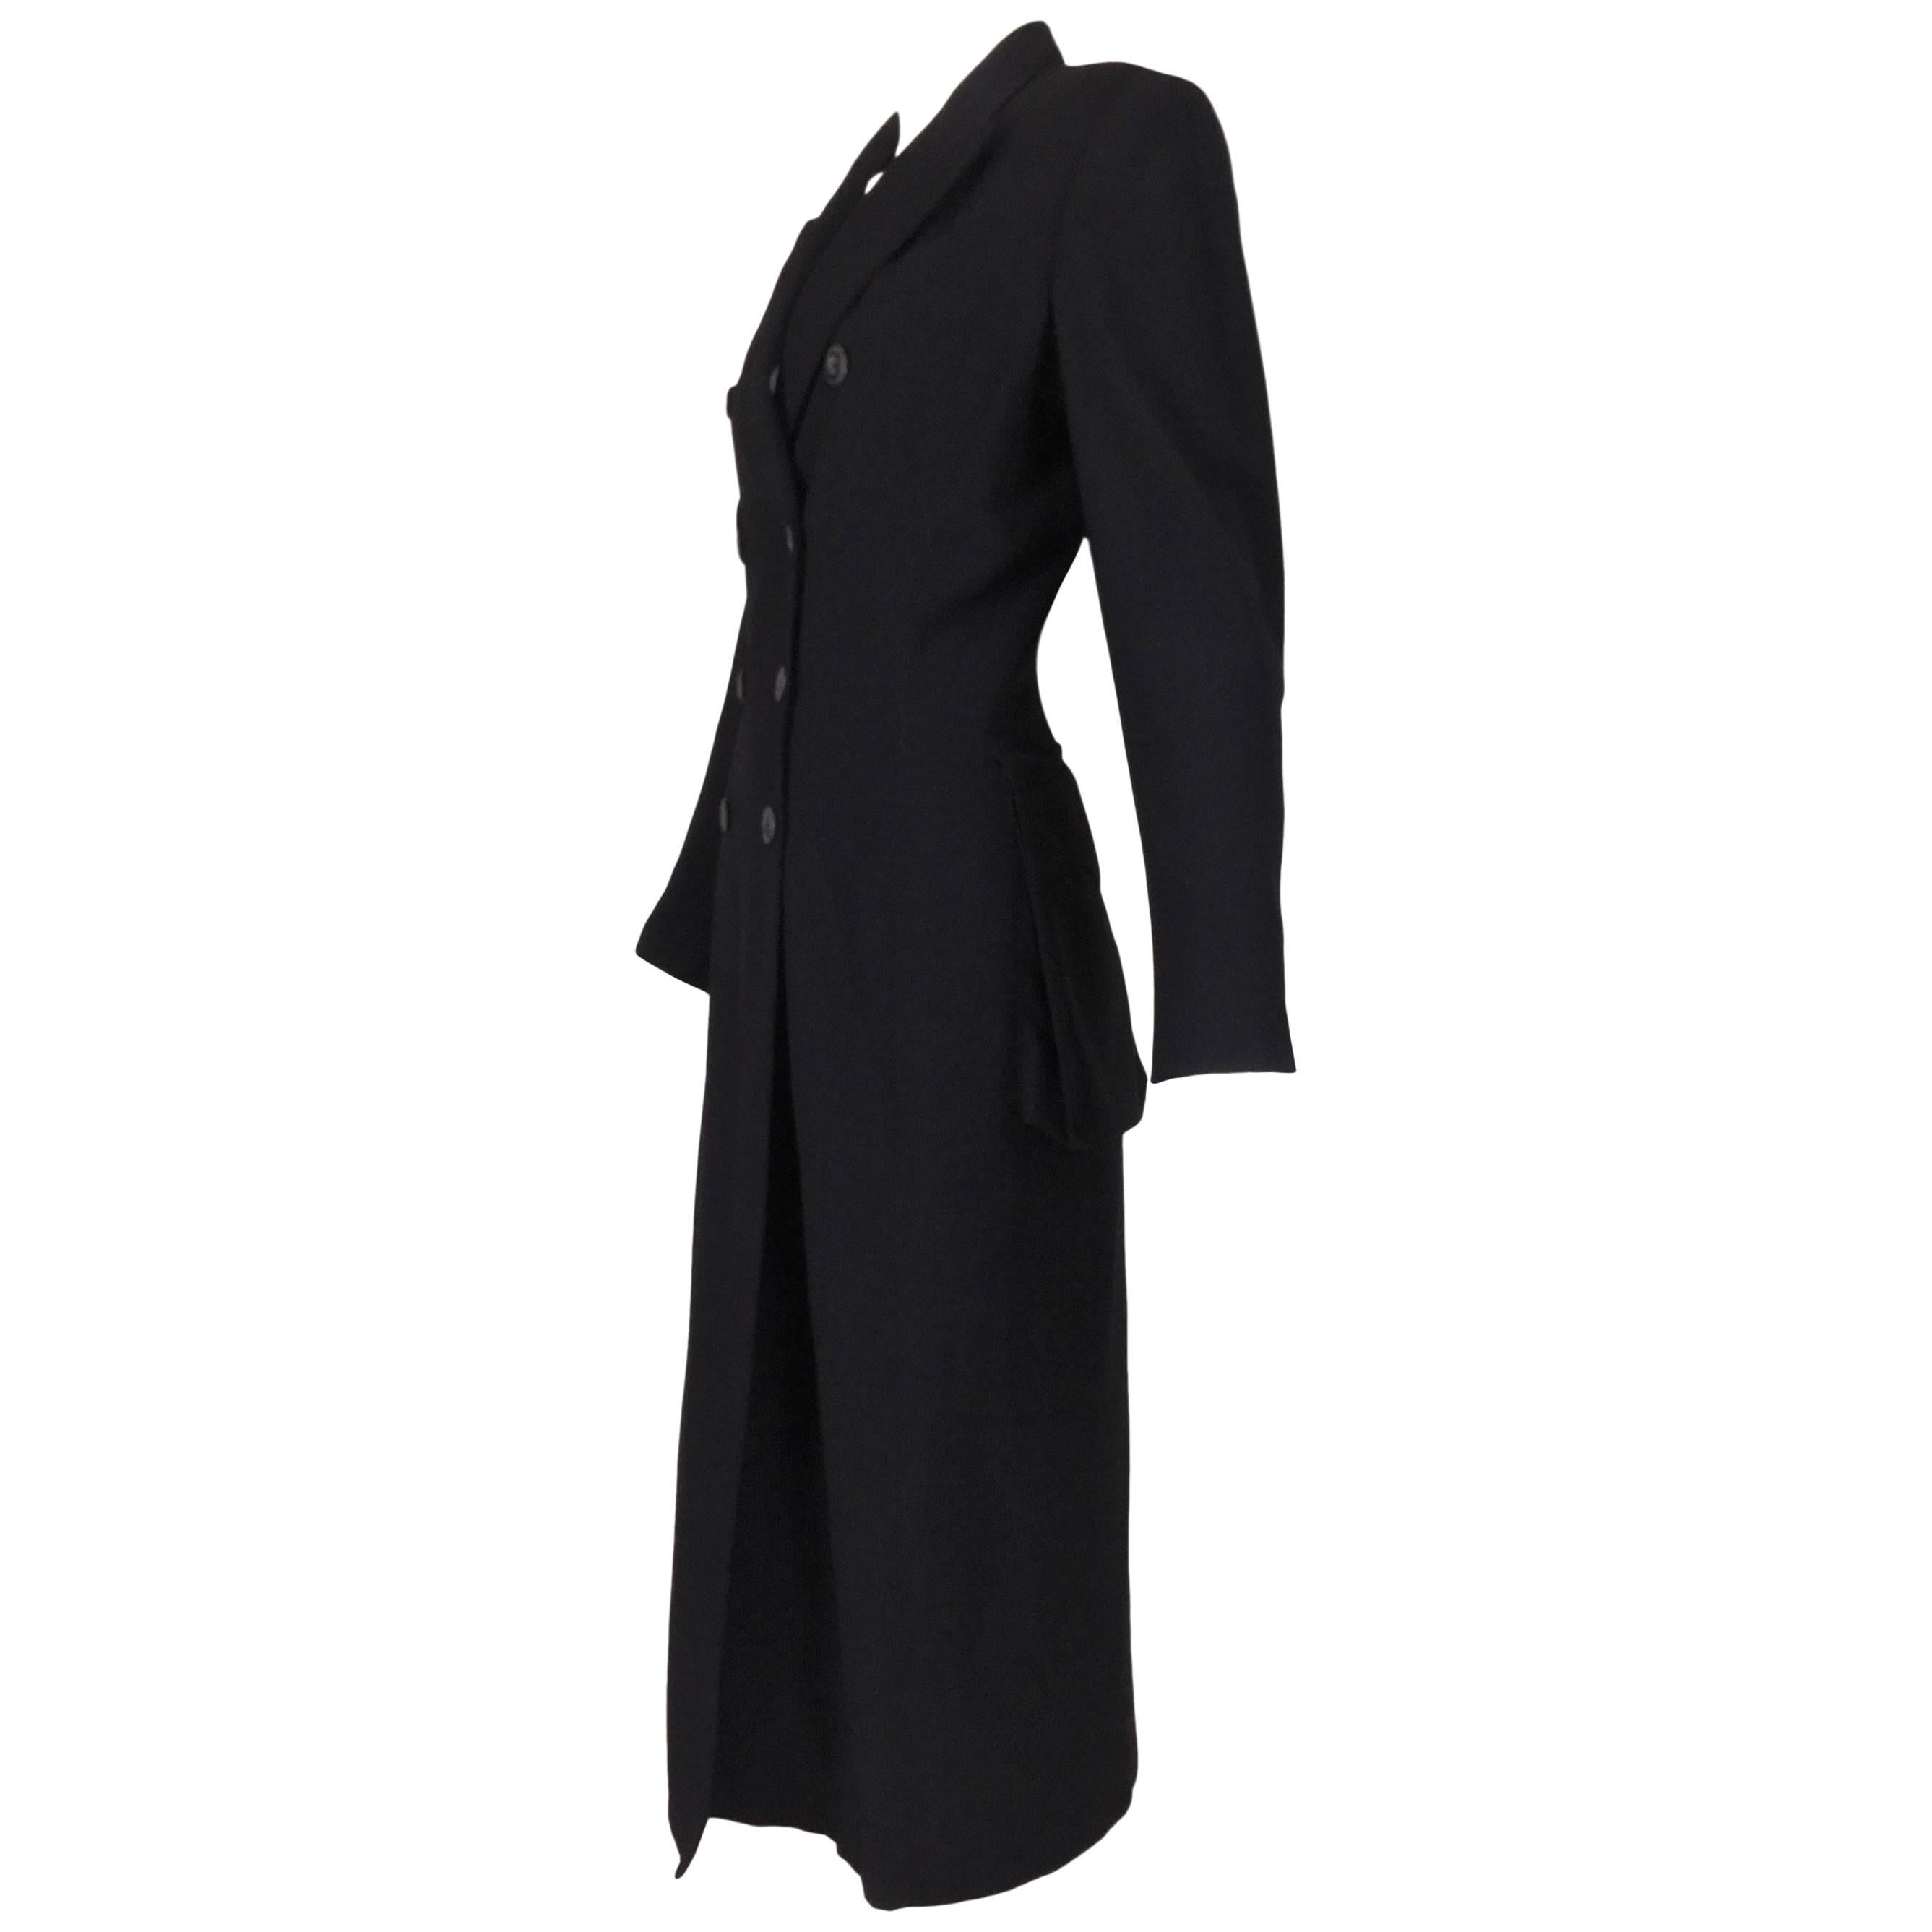 F/W 1992 Jean Paul Gaultier Black Coat Dress Jacket w/ Large Butt Pockets